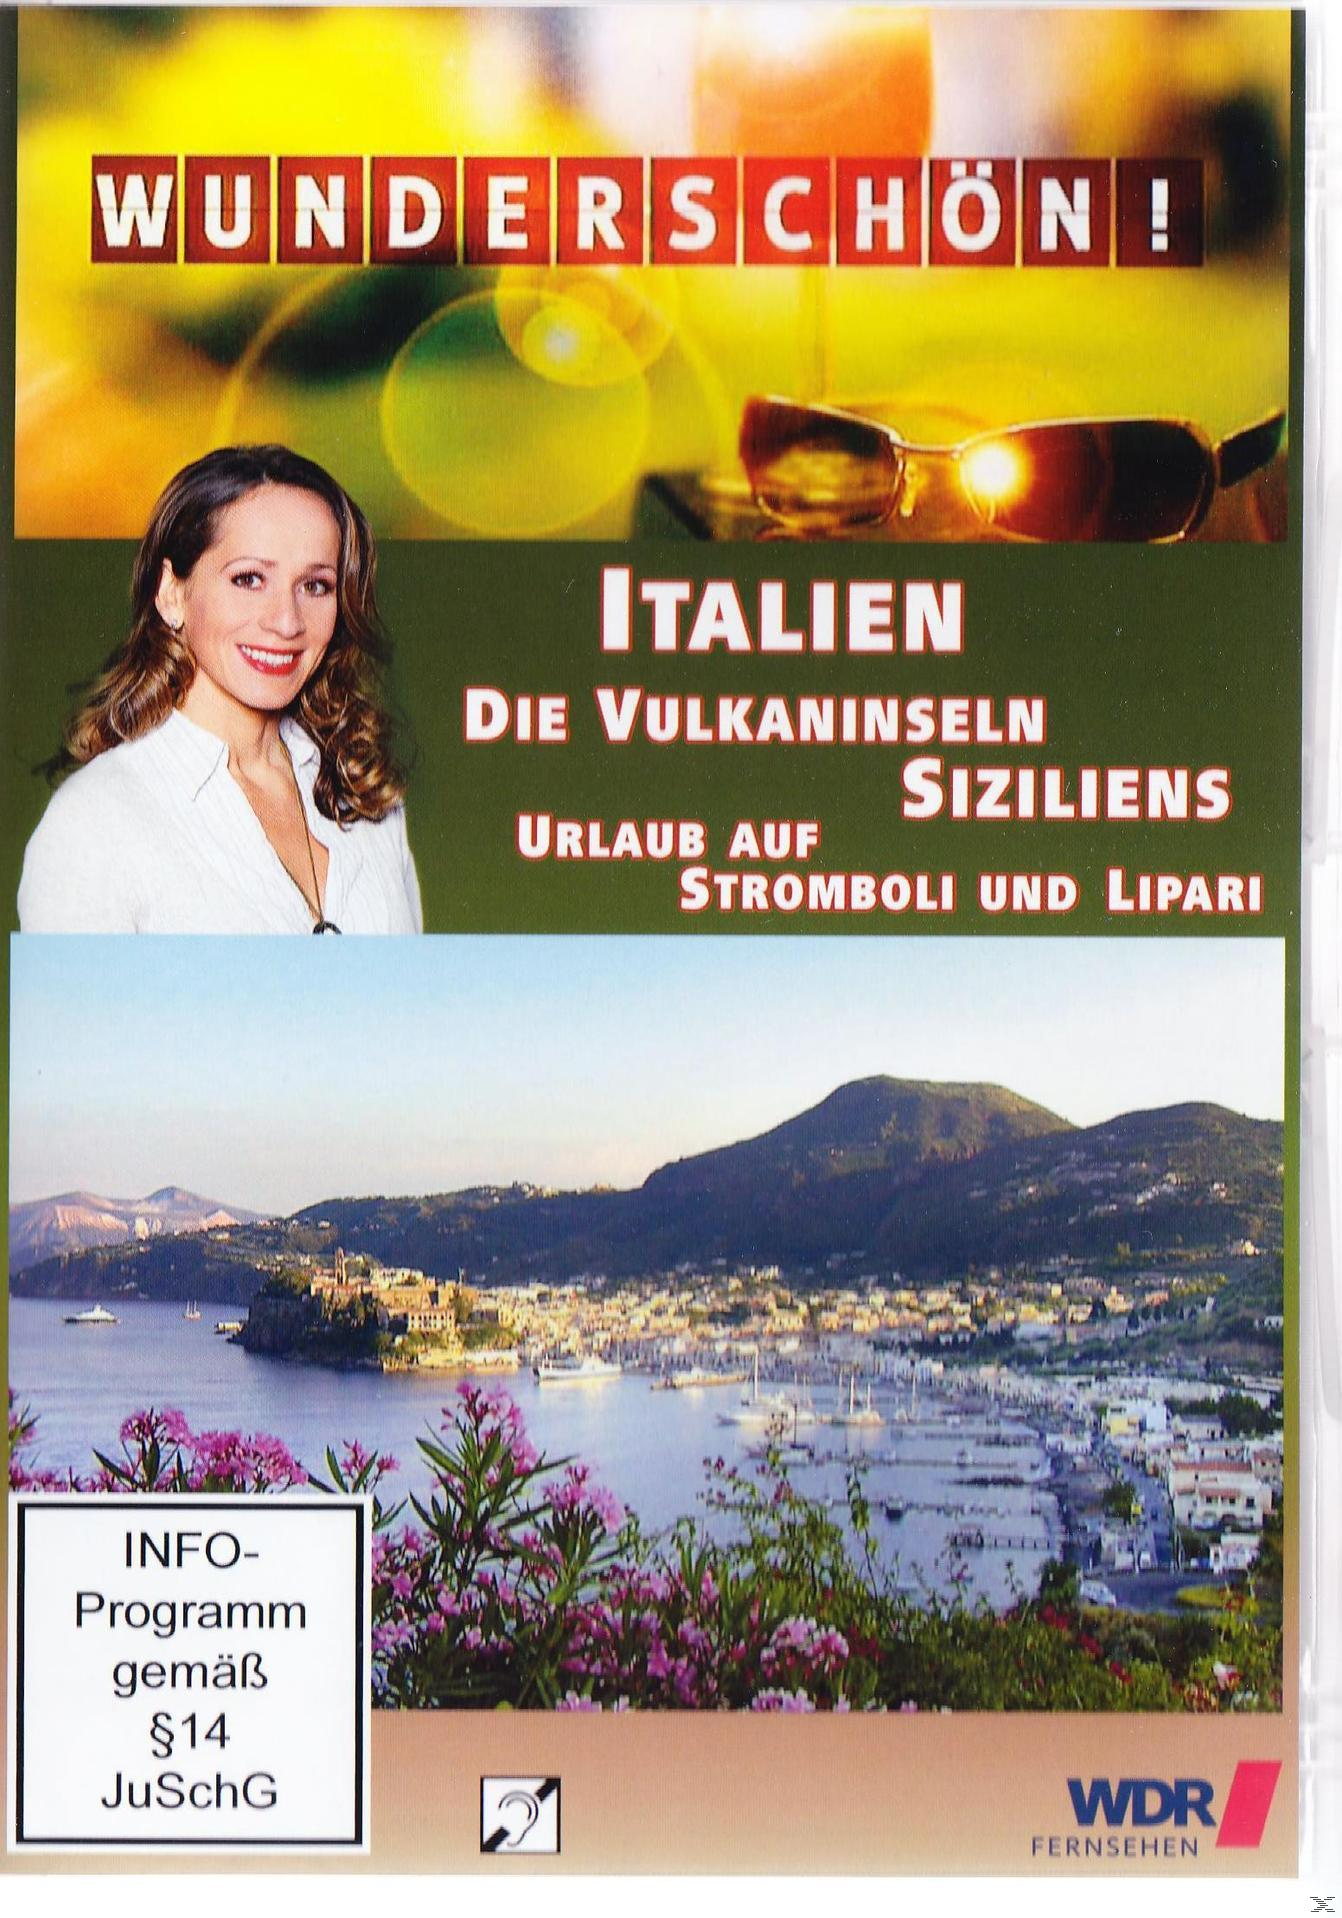 Vulkaninseln Lipari - Stromboli auf Die Urlaub Wunderschön! Italien: - Siziliens DVD und